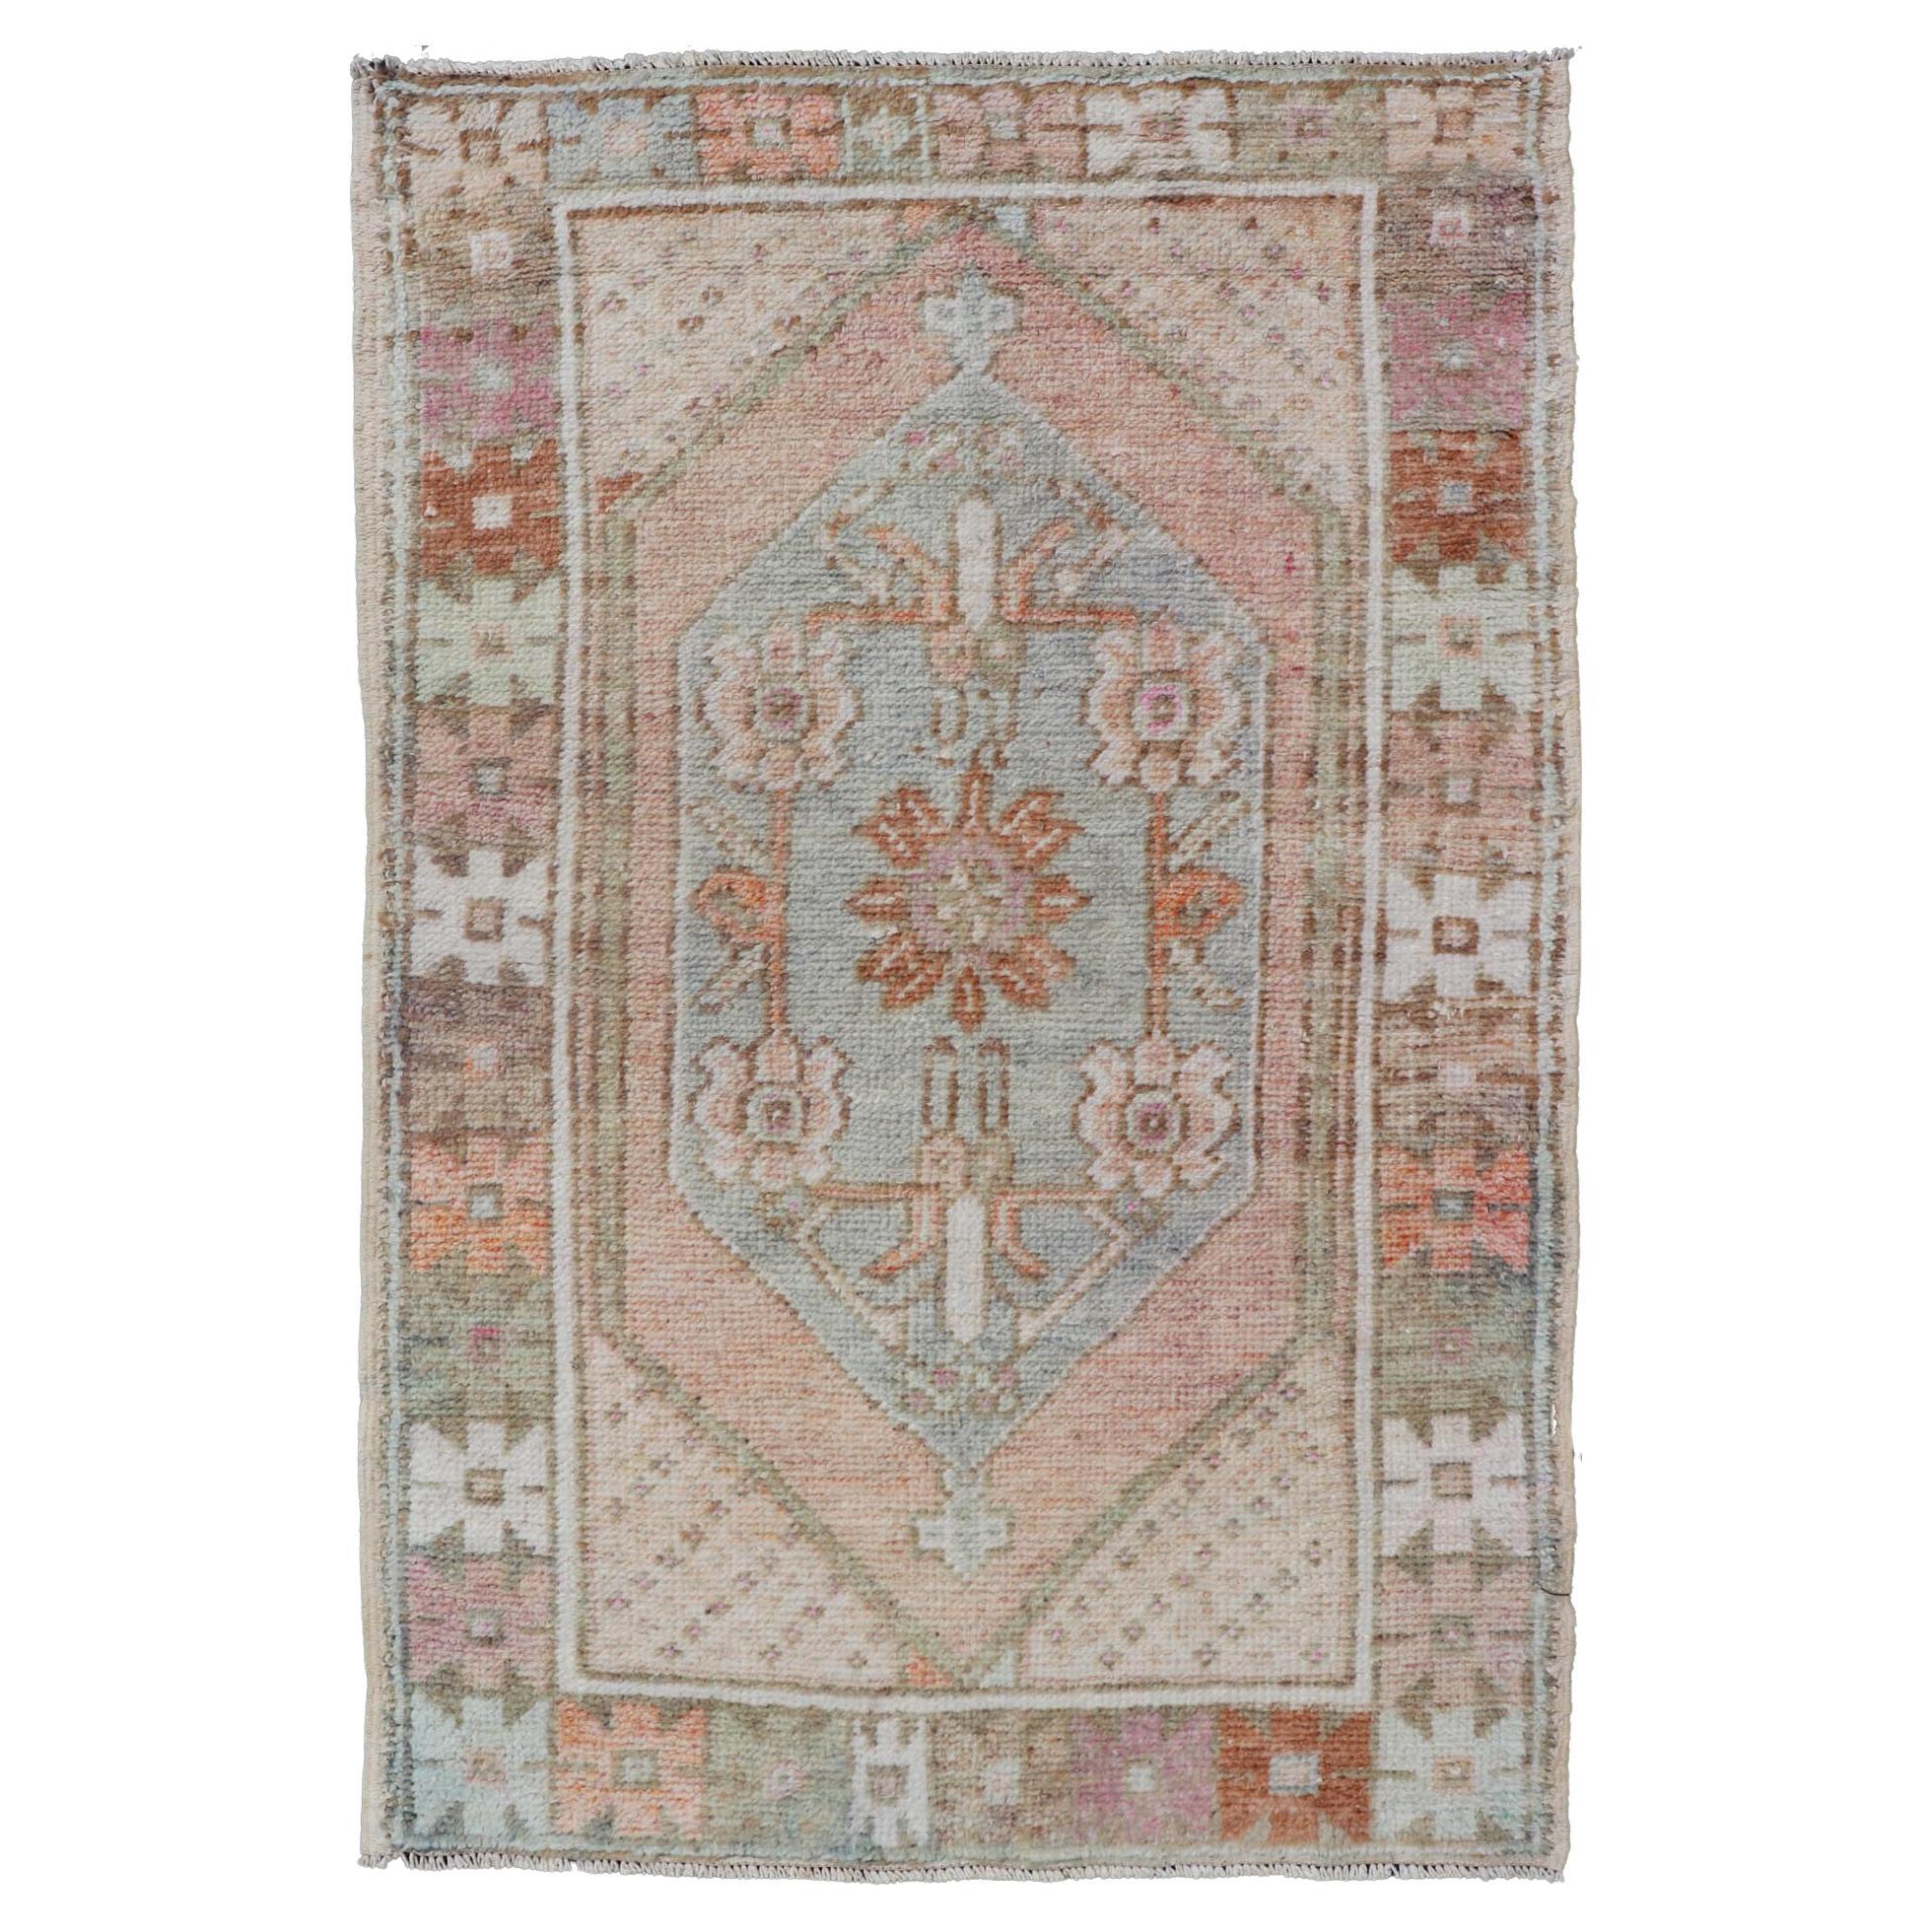 Vintage Turkish Oushak Carpet with Beautiful Floral Motifs in Tan, Camel, Orange